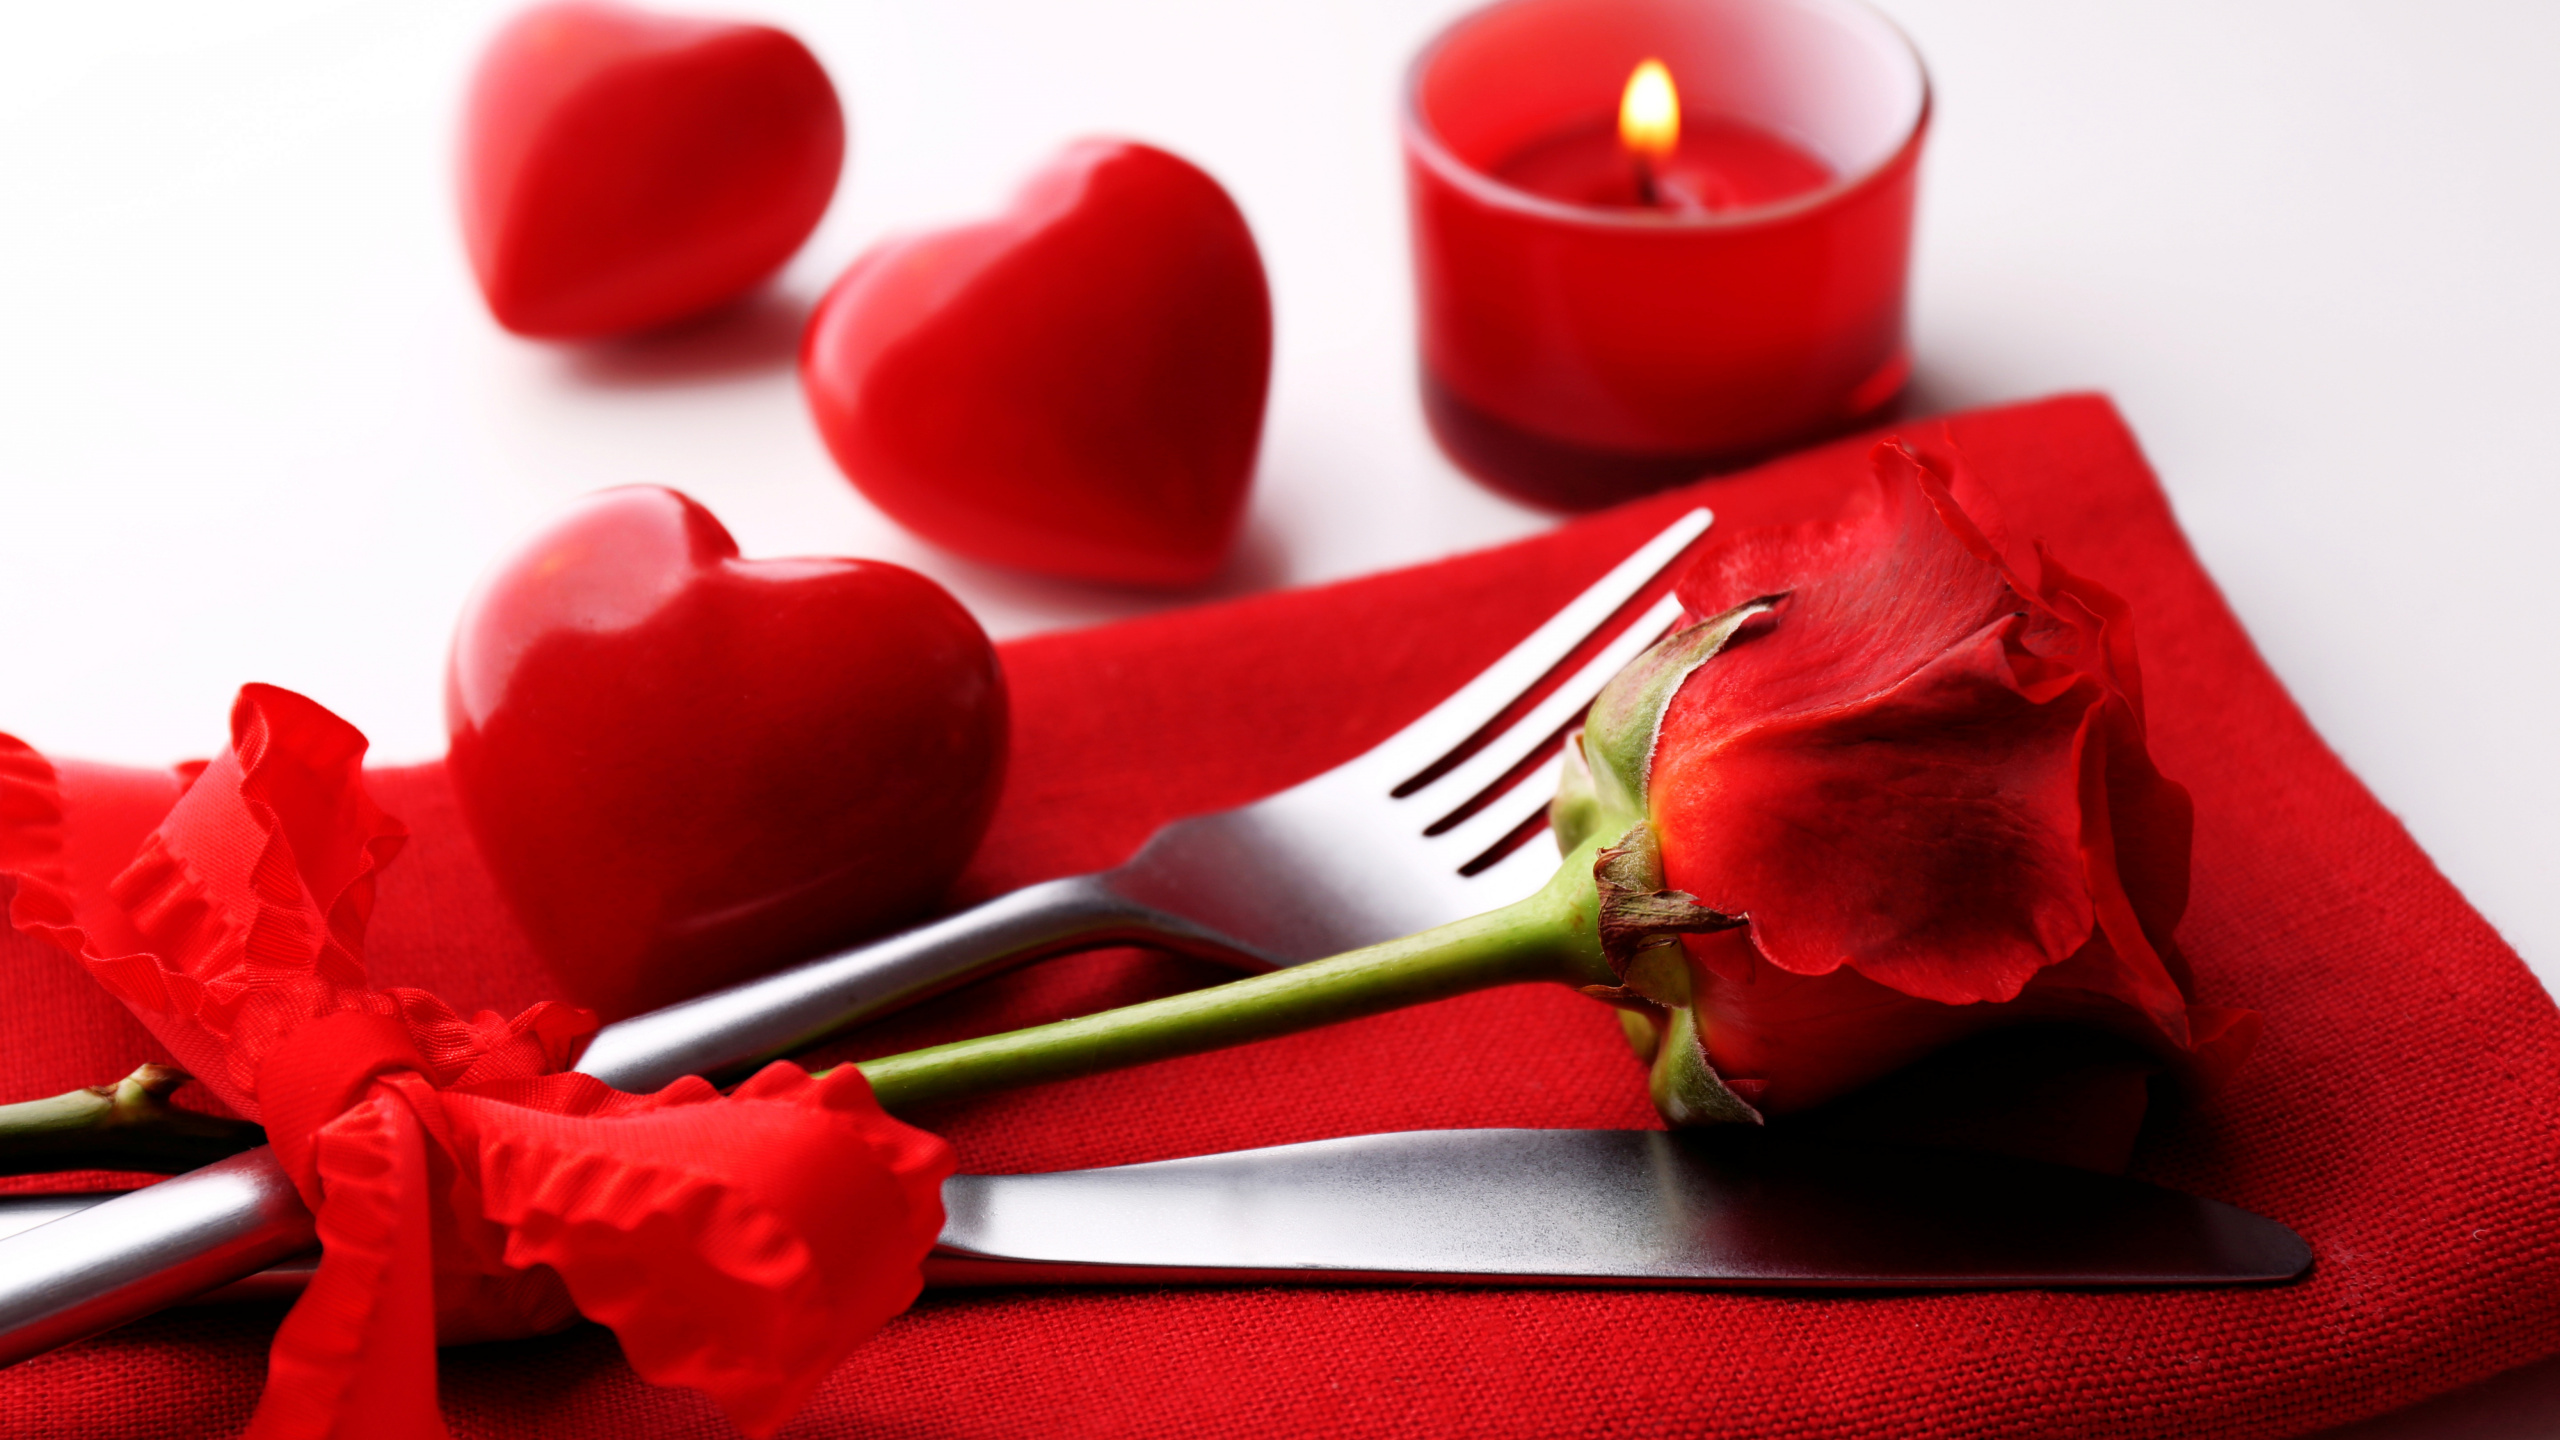 爱情, 浪漫, 画布, 玫瑰花园, 花卉设计 壁纸 2560x1440 允许